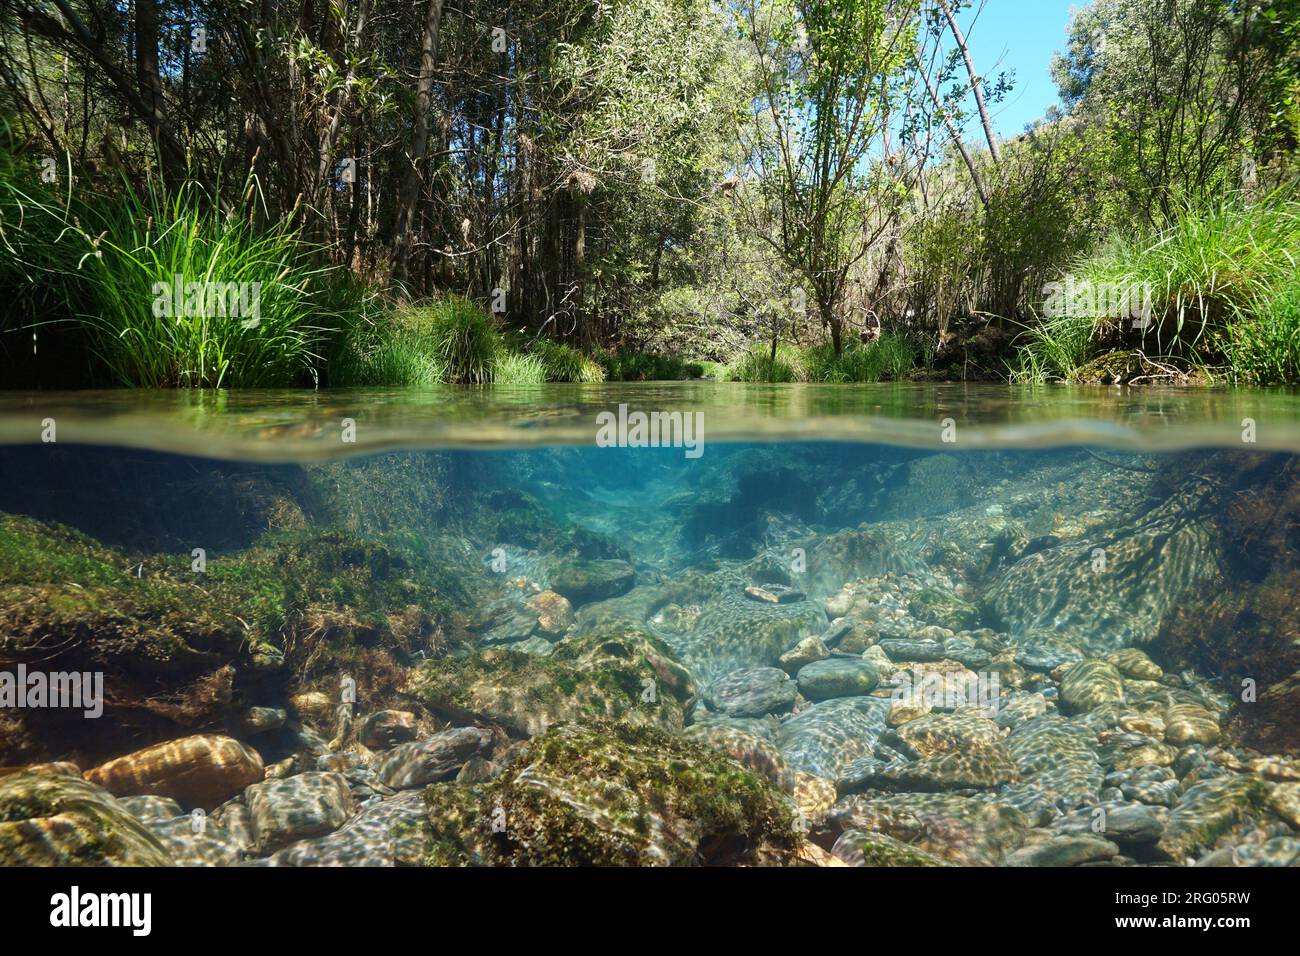 Rivière sauvage à l'eau claire, scène naturelle, vue partagée sur et sous la surface de l'eau, Espagne, Galice, province de Pontevedra Banque D'Images